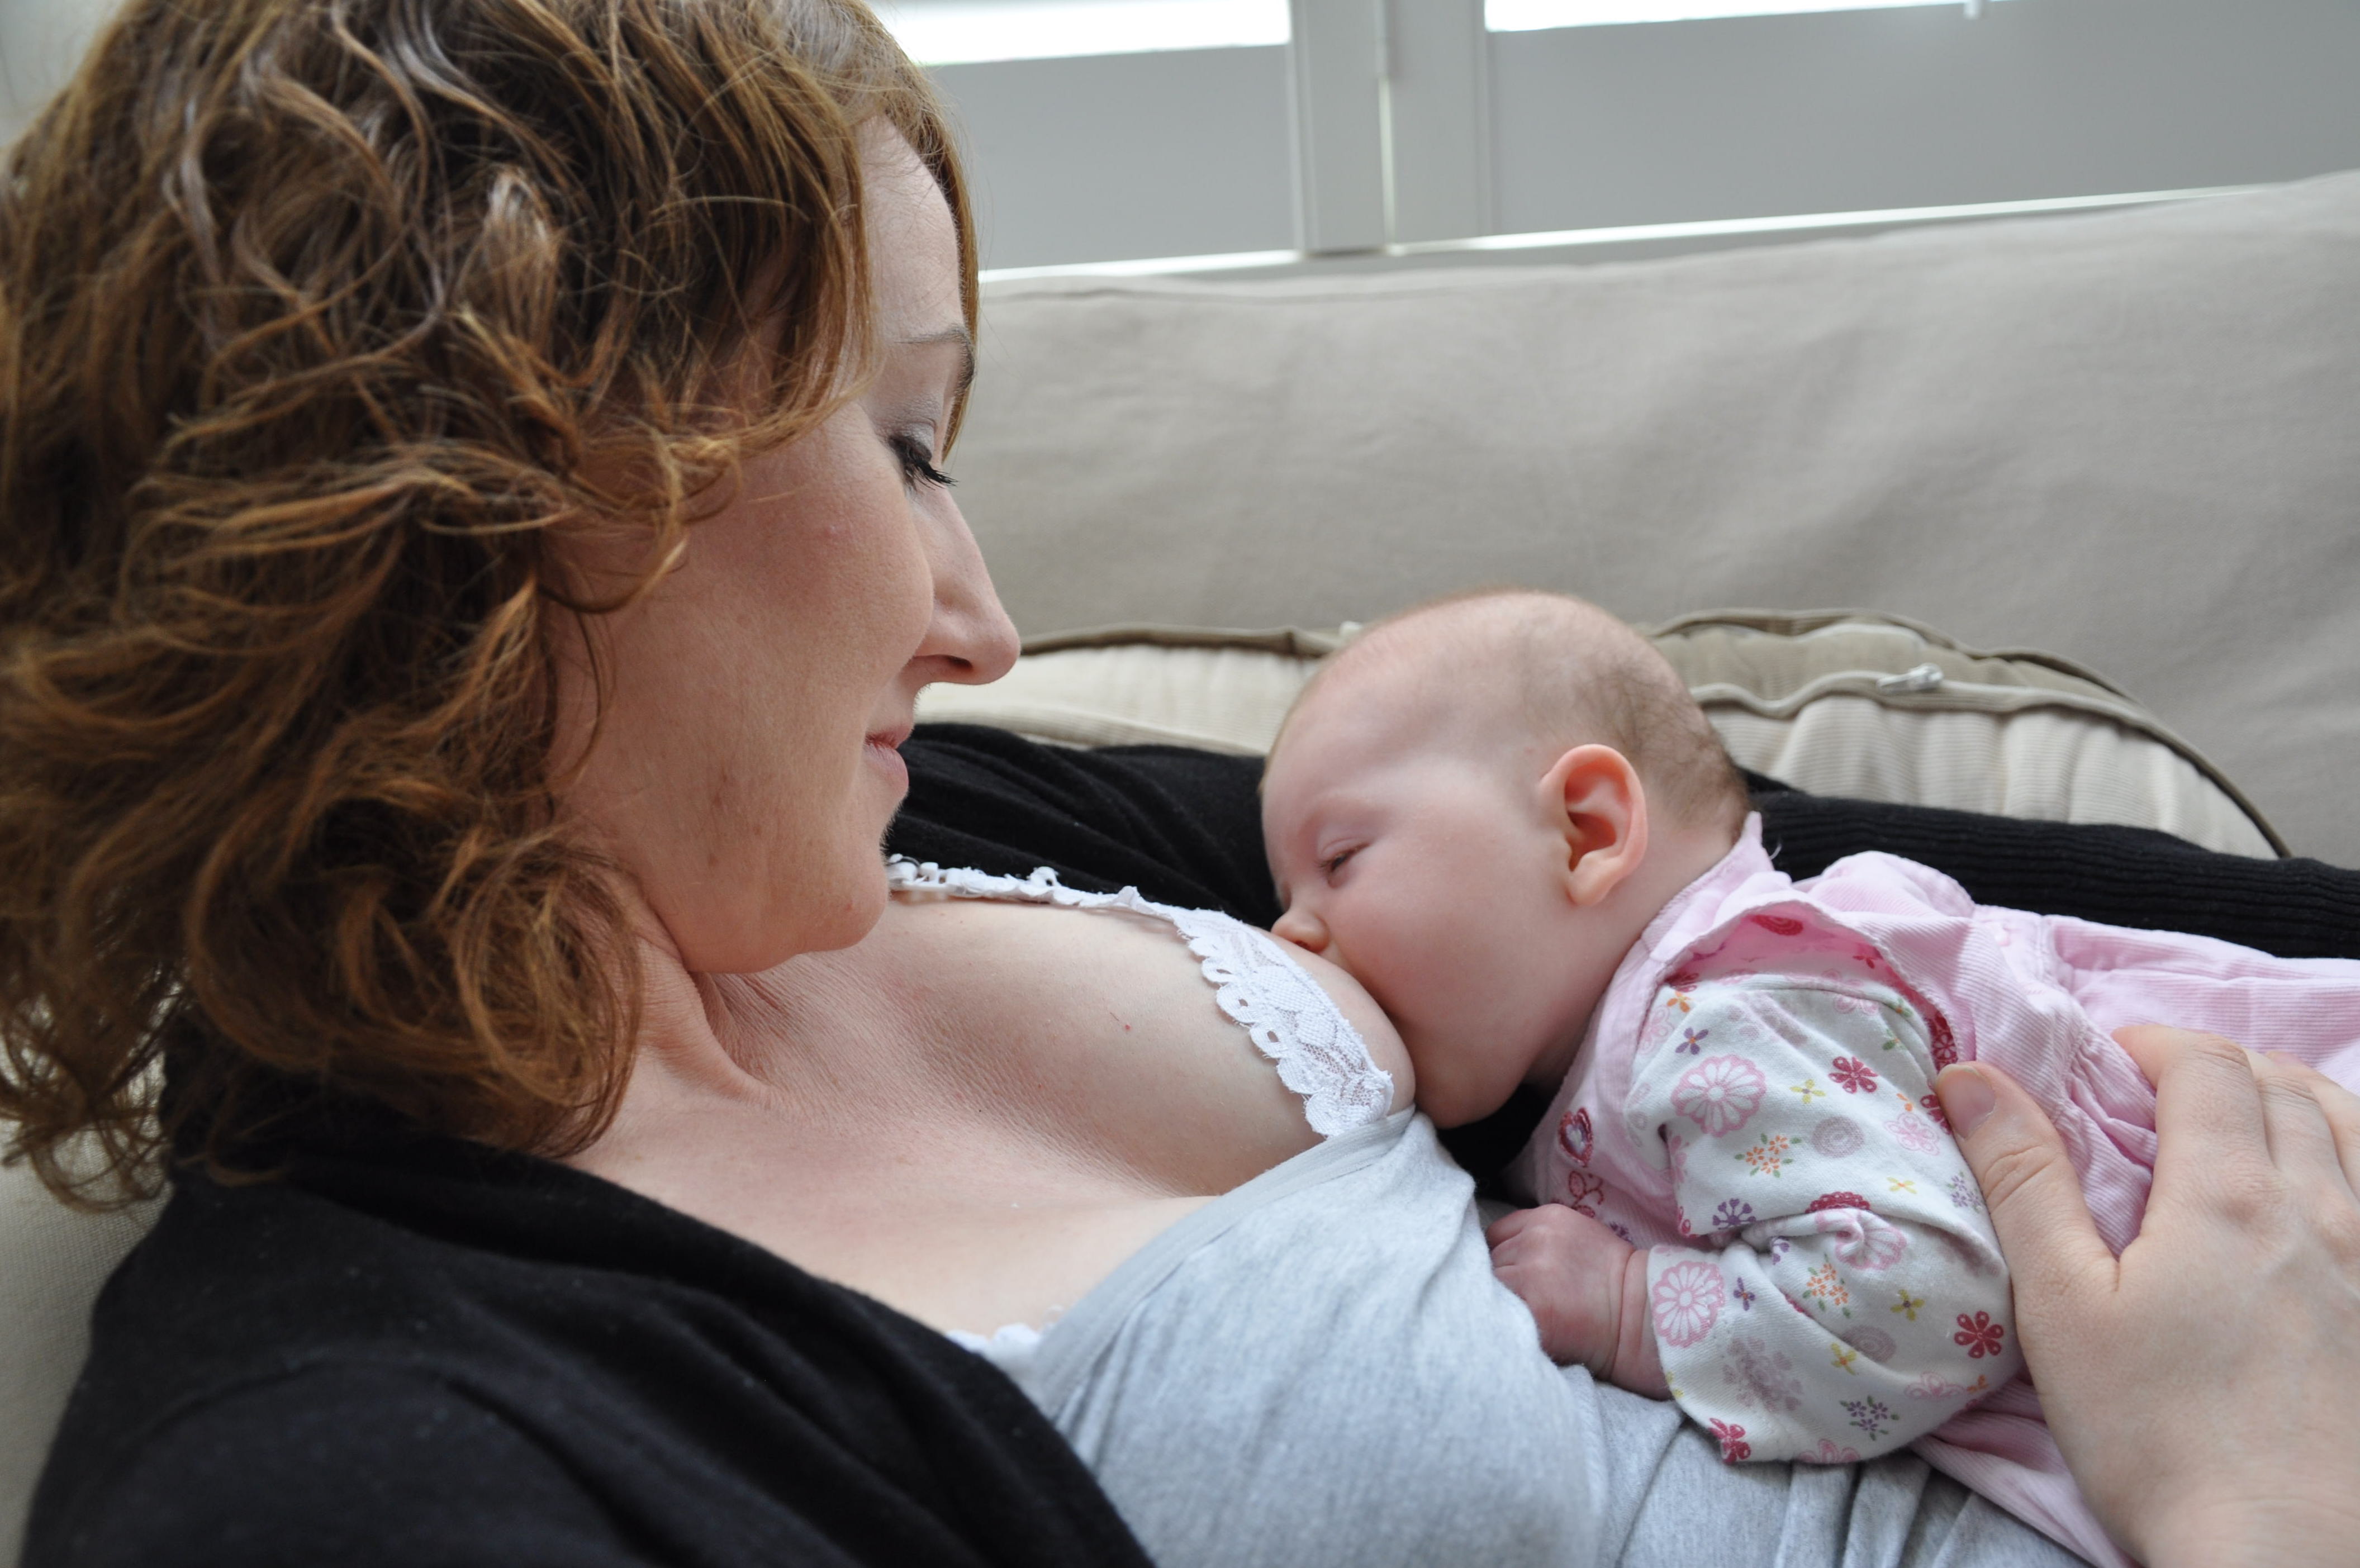 Mum breastfeeding her baby.